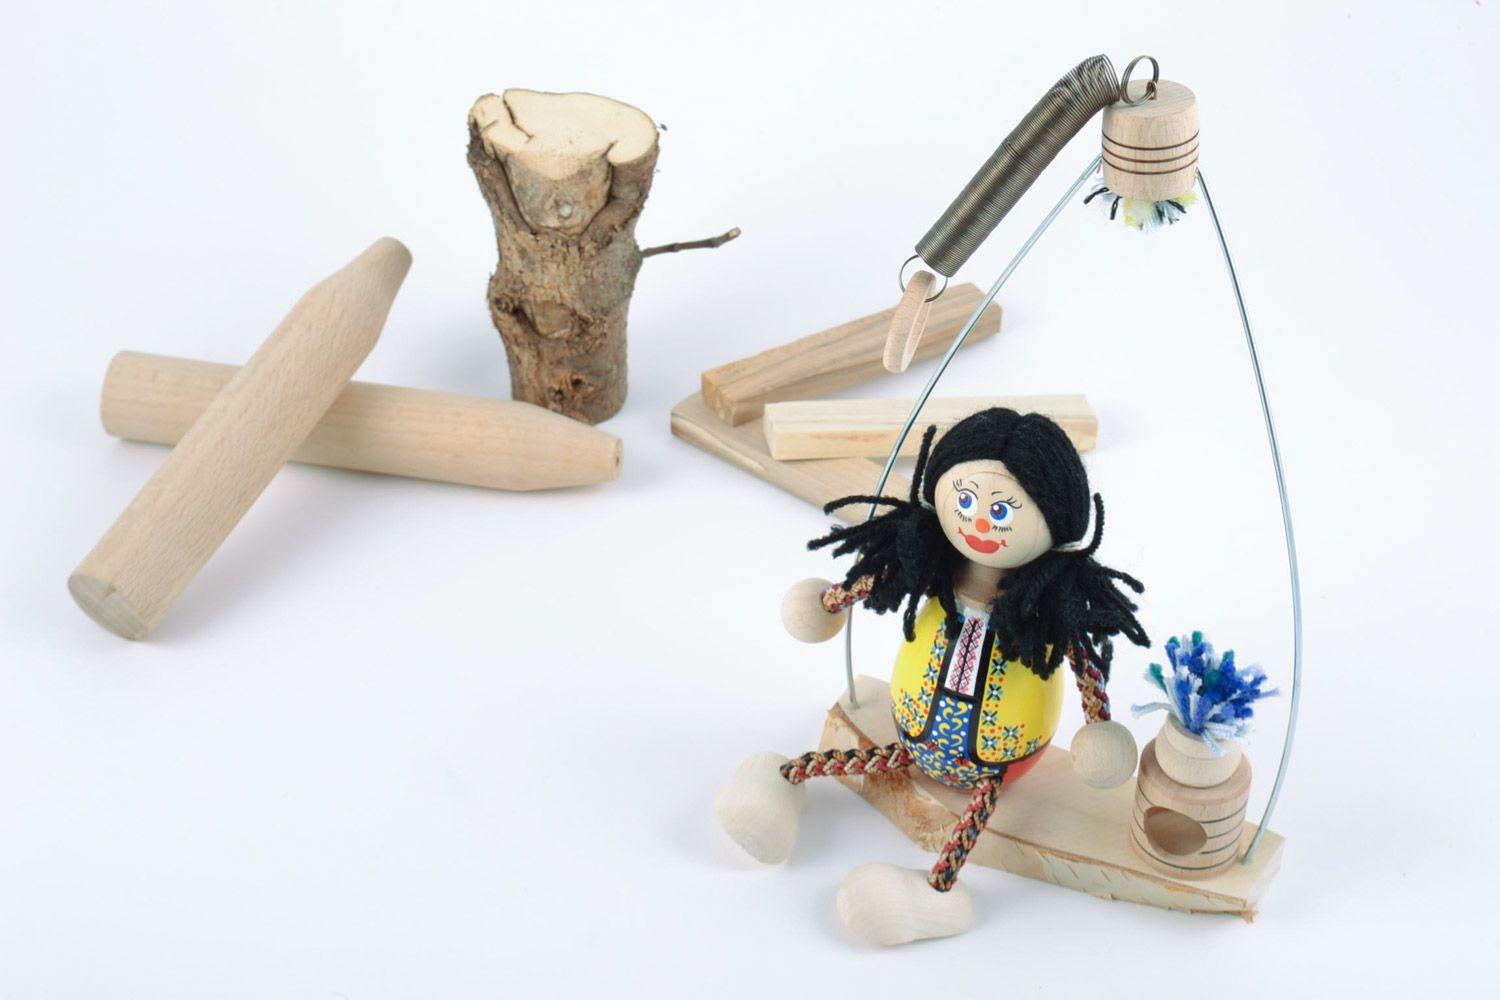 Öko Spielzeug aus Holz Mädchen auf Bank Handarbeit mit Bemalung Geschenk Mädchen foto 1